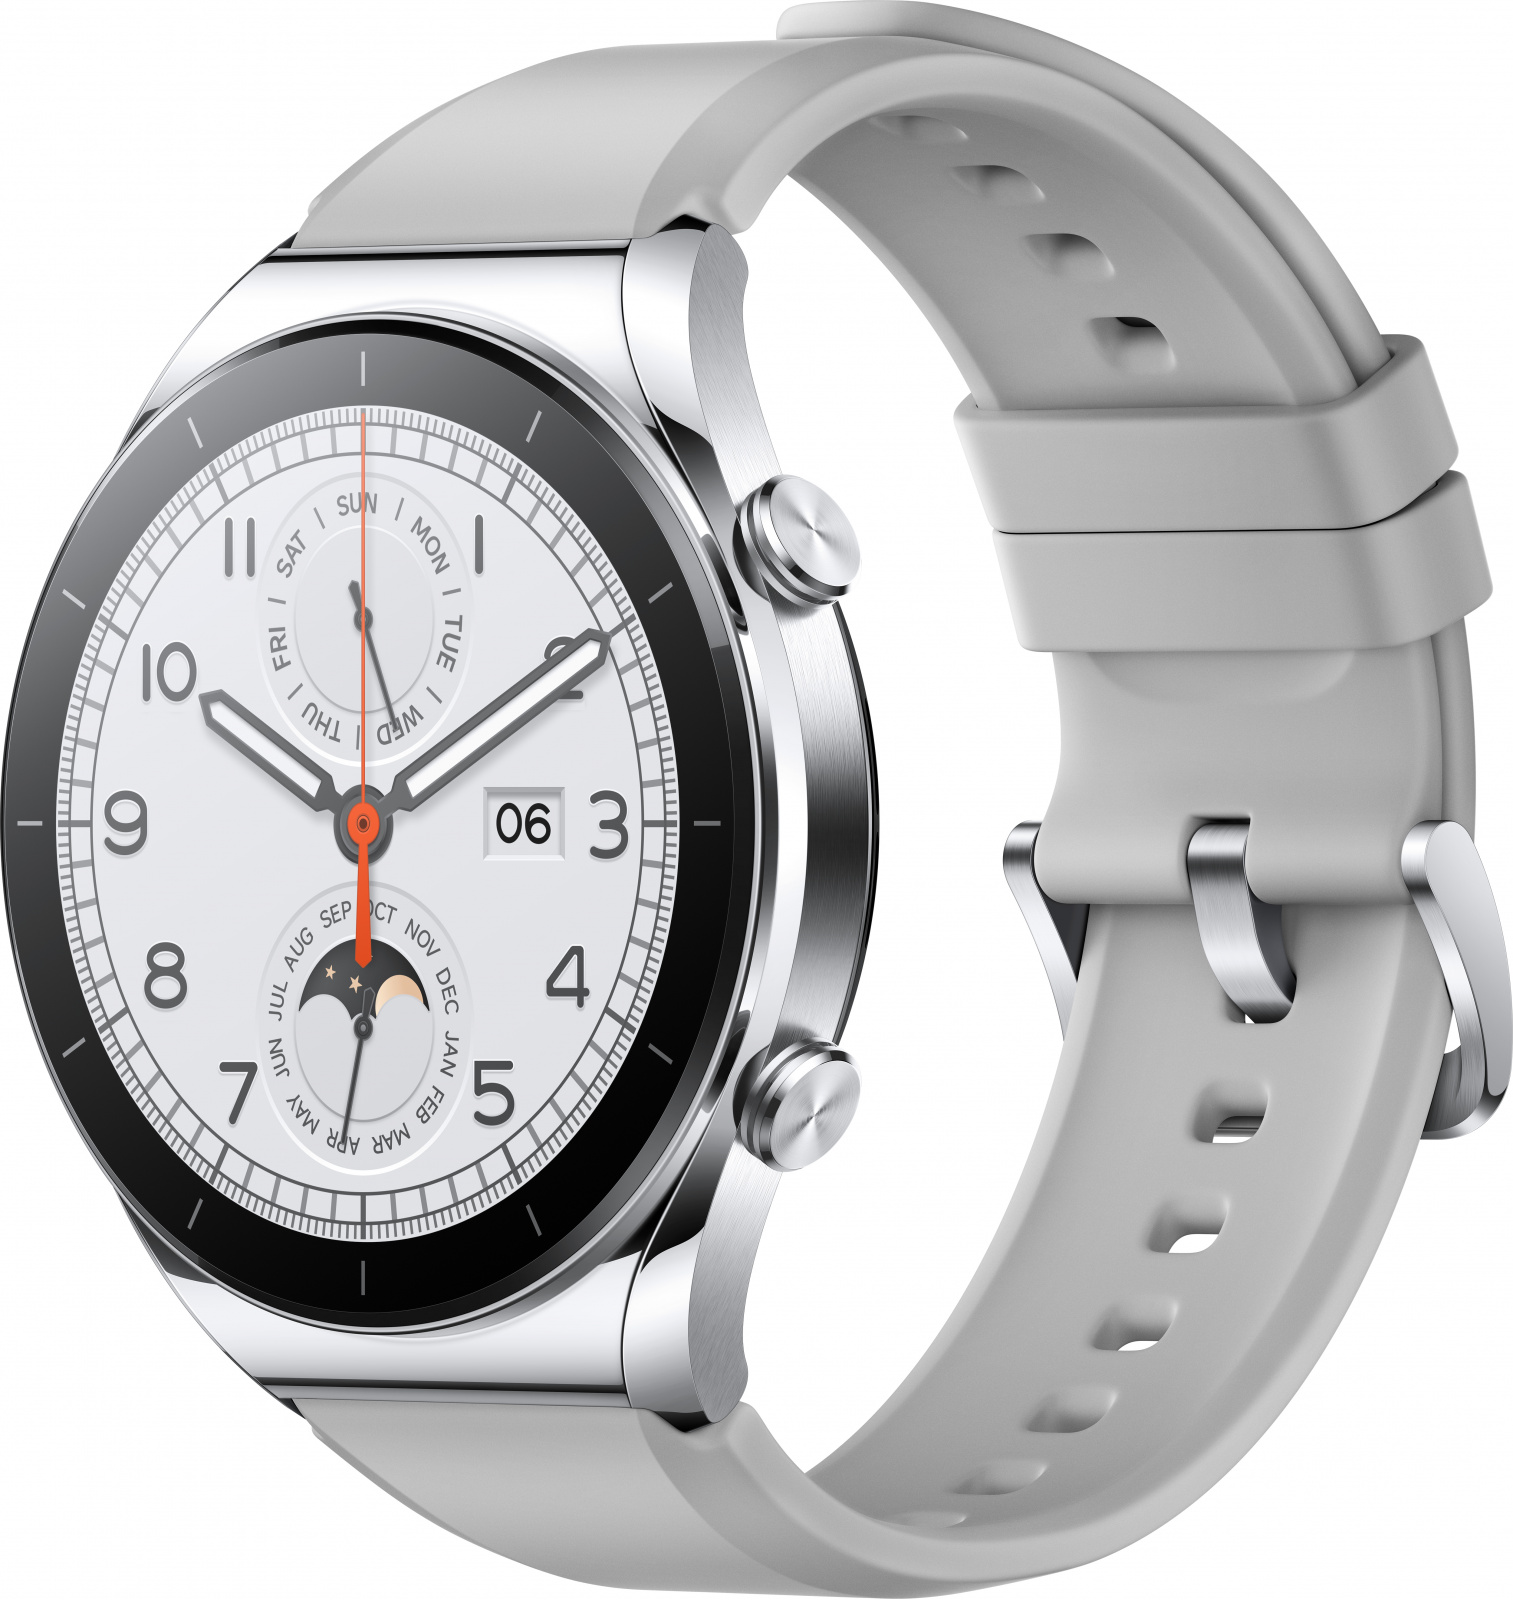 Xiaomi Xiaomi Watch S1 GL (Silver)